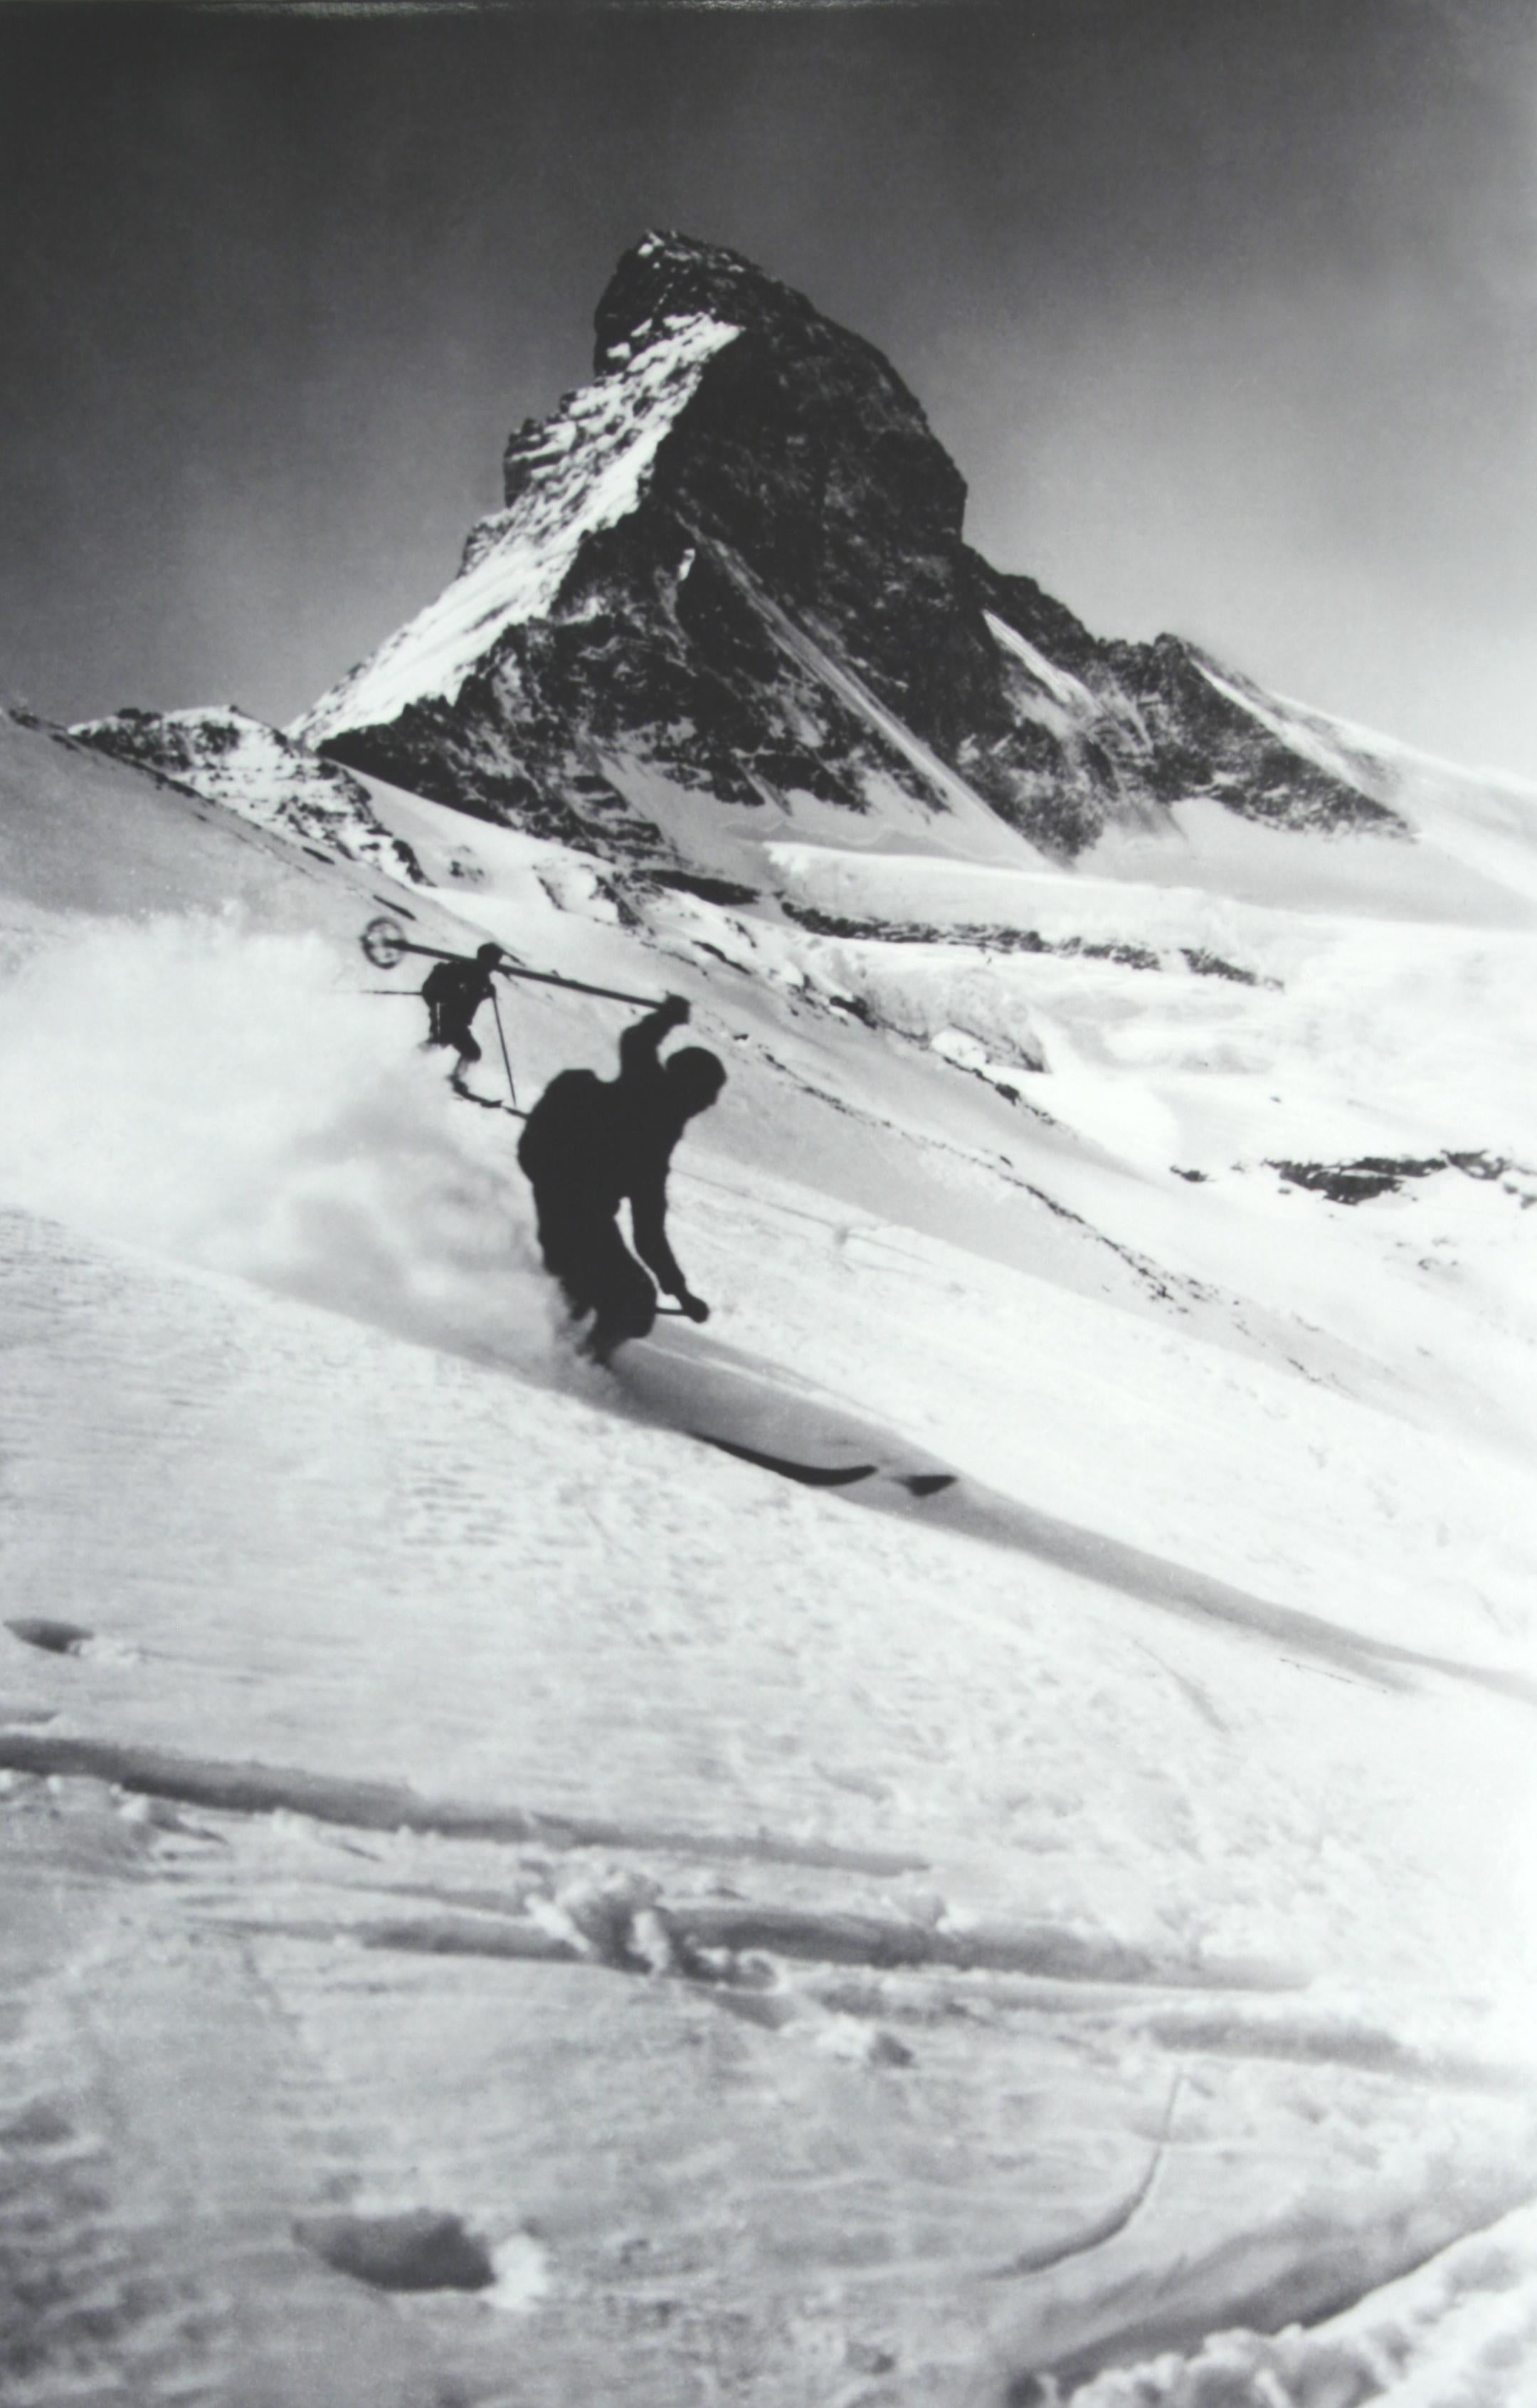 Alte, antike Fotografie eines alpinen Skifahrers.
matterhorn & Skifahrer